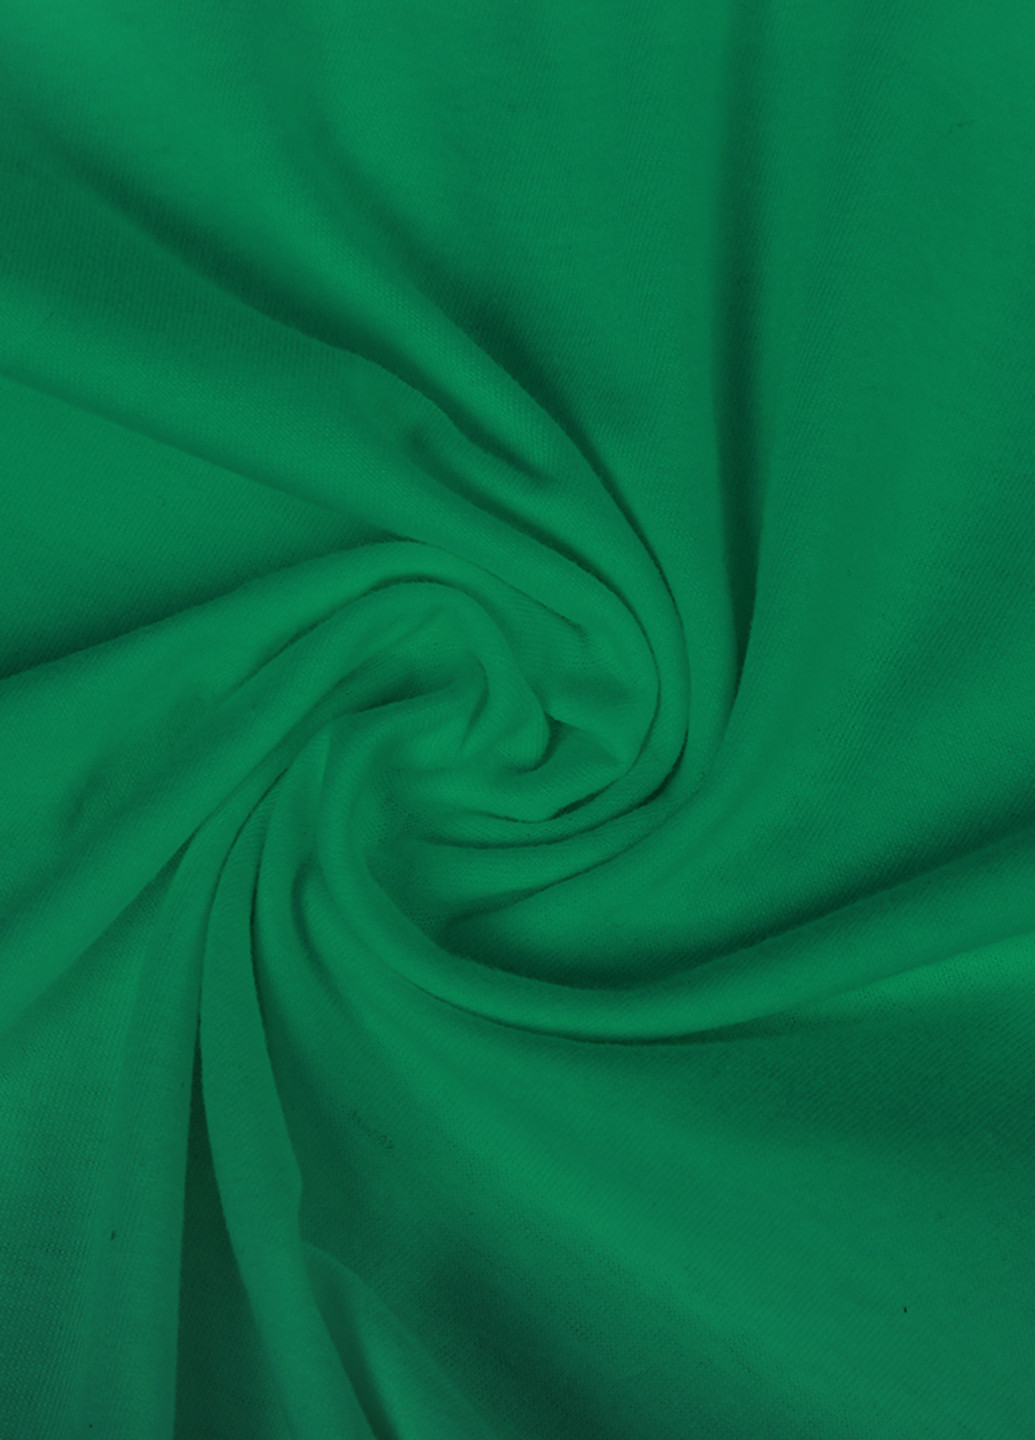 Зелена демісезонна футболка дитяча фортнайт (fortnite) (9224-1193) MobiPrint